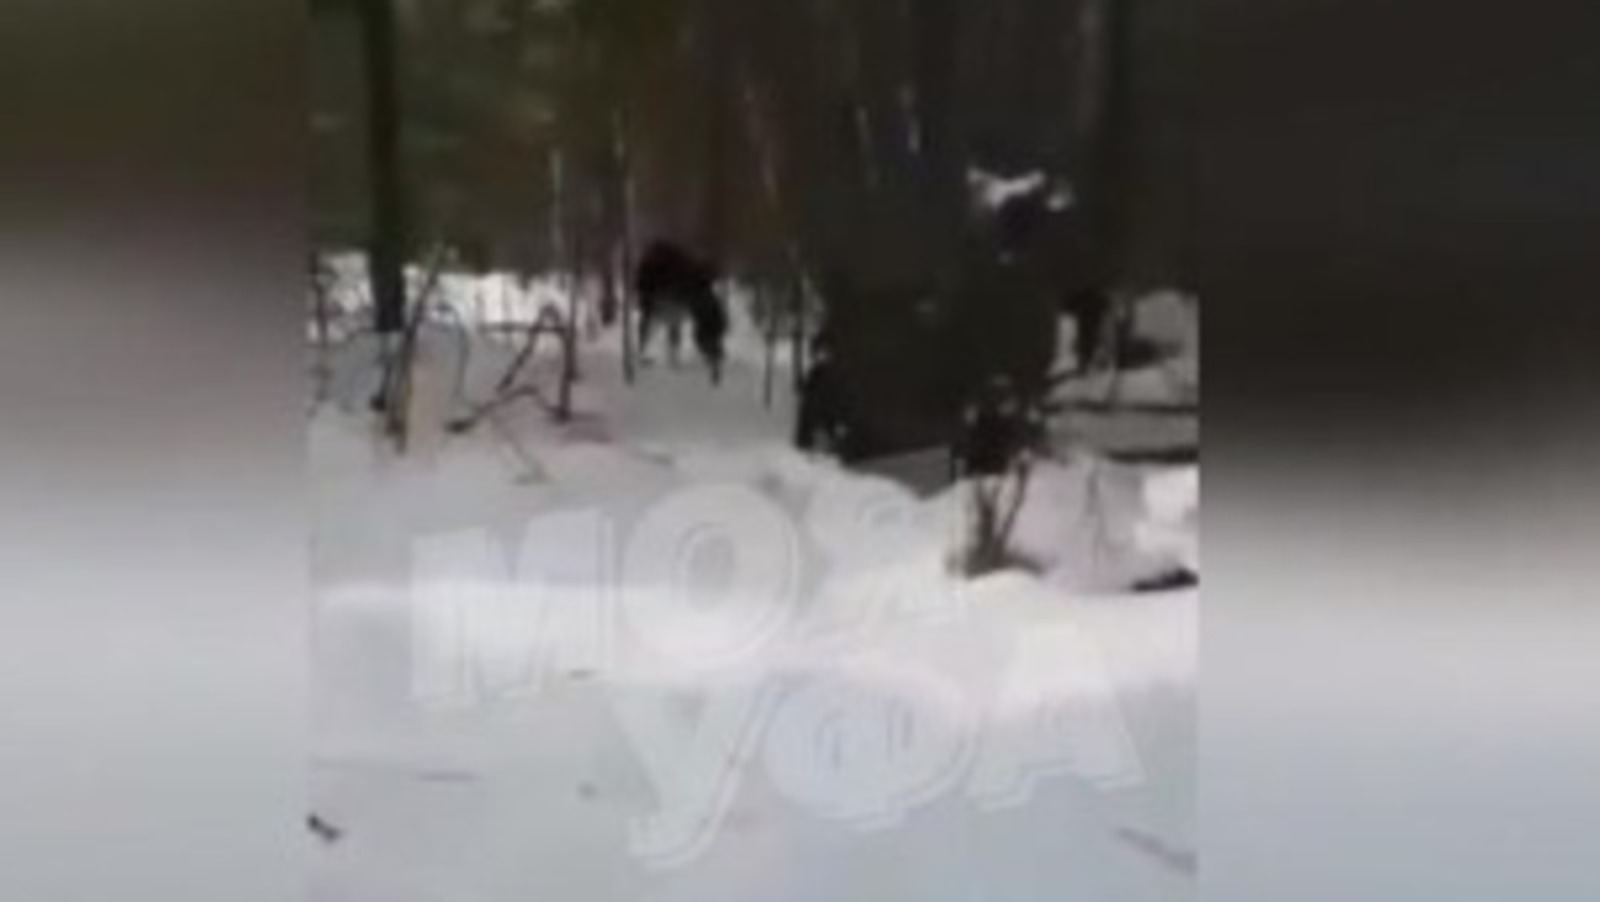 "Совсем не Башкирия": В Минэкологии РБ прокомментировали видео с дровосеками и напавшим на лося голодным медведем